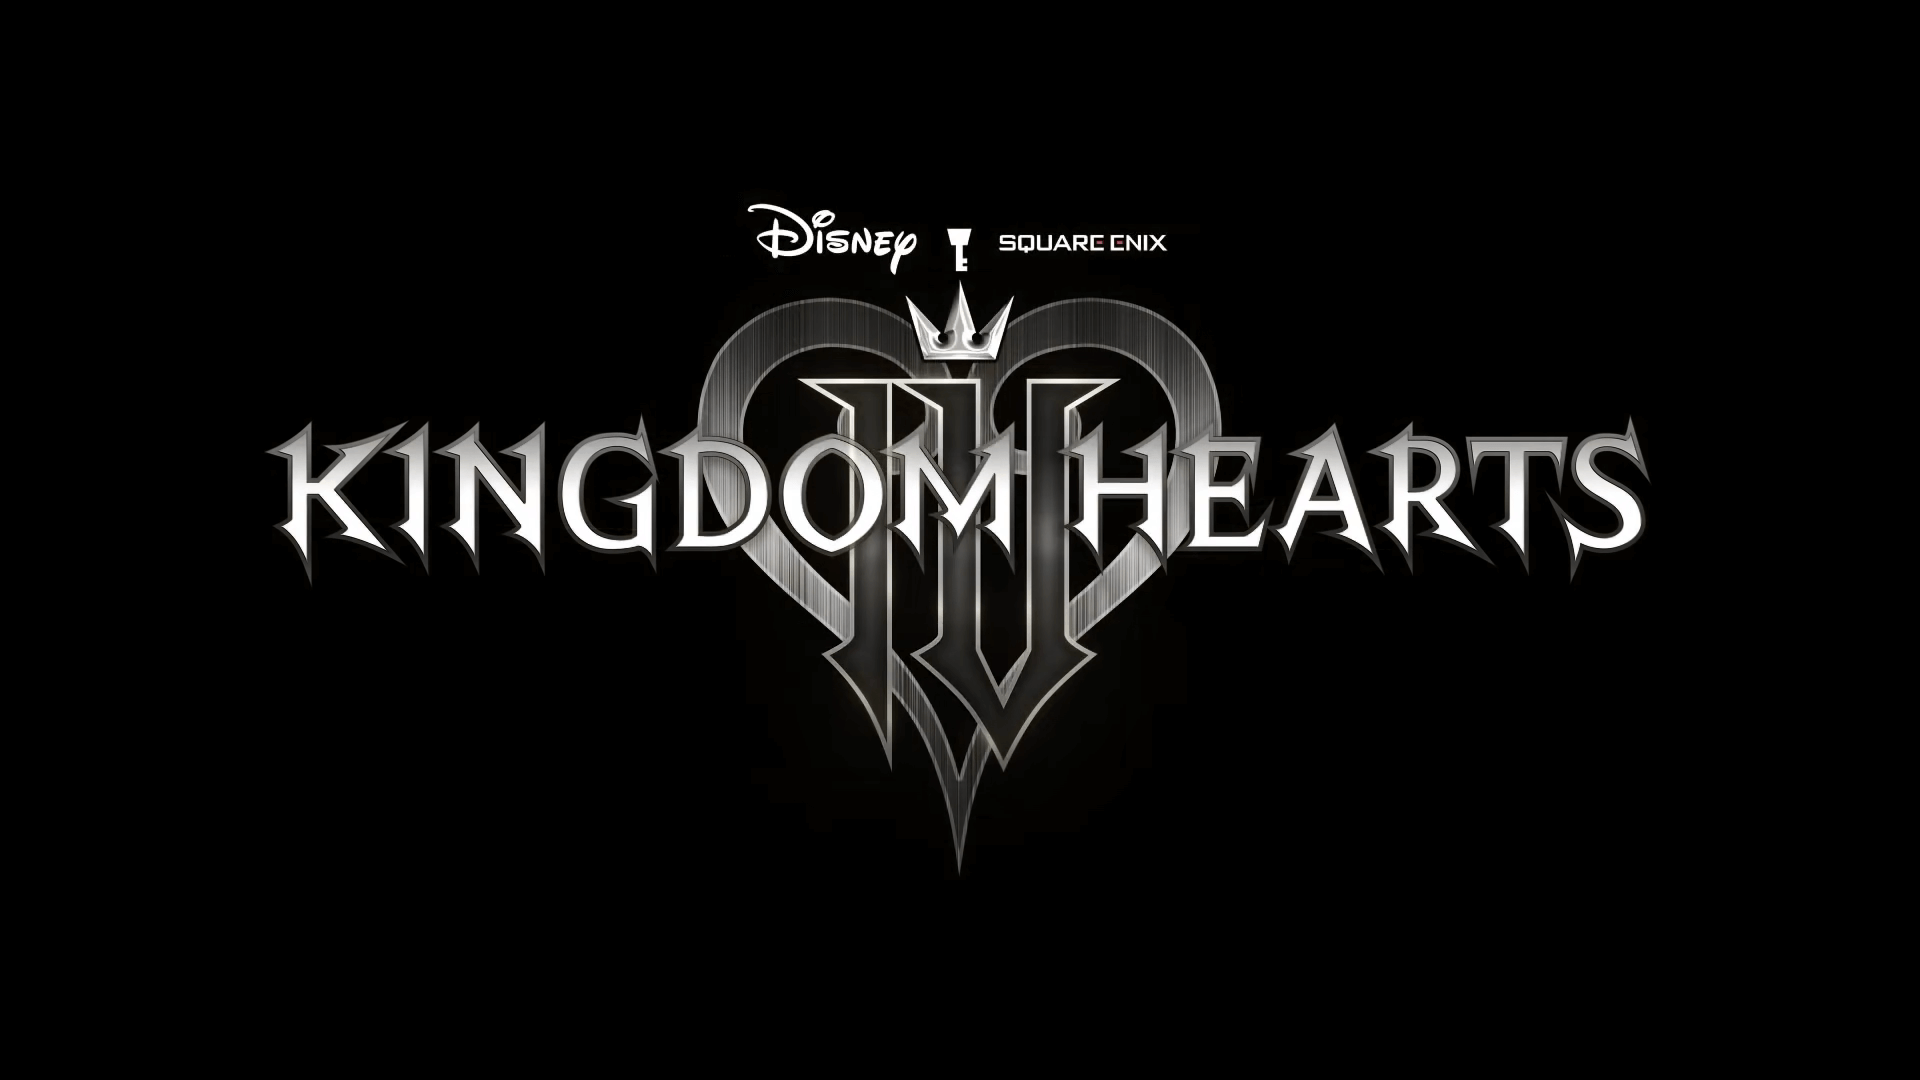 Kingdom Hearts 4: Grafikleistung begrenzt Anzahl der Disney Welten Titel